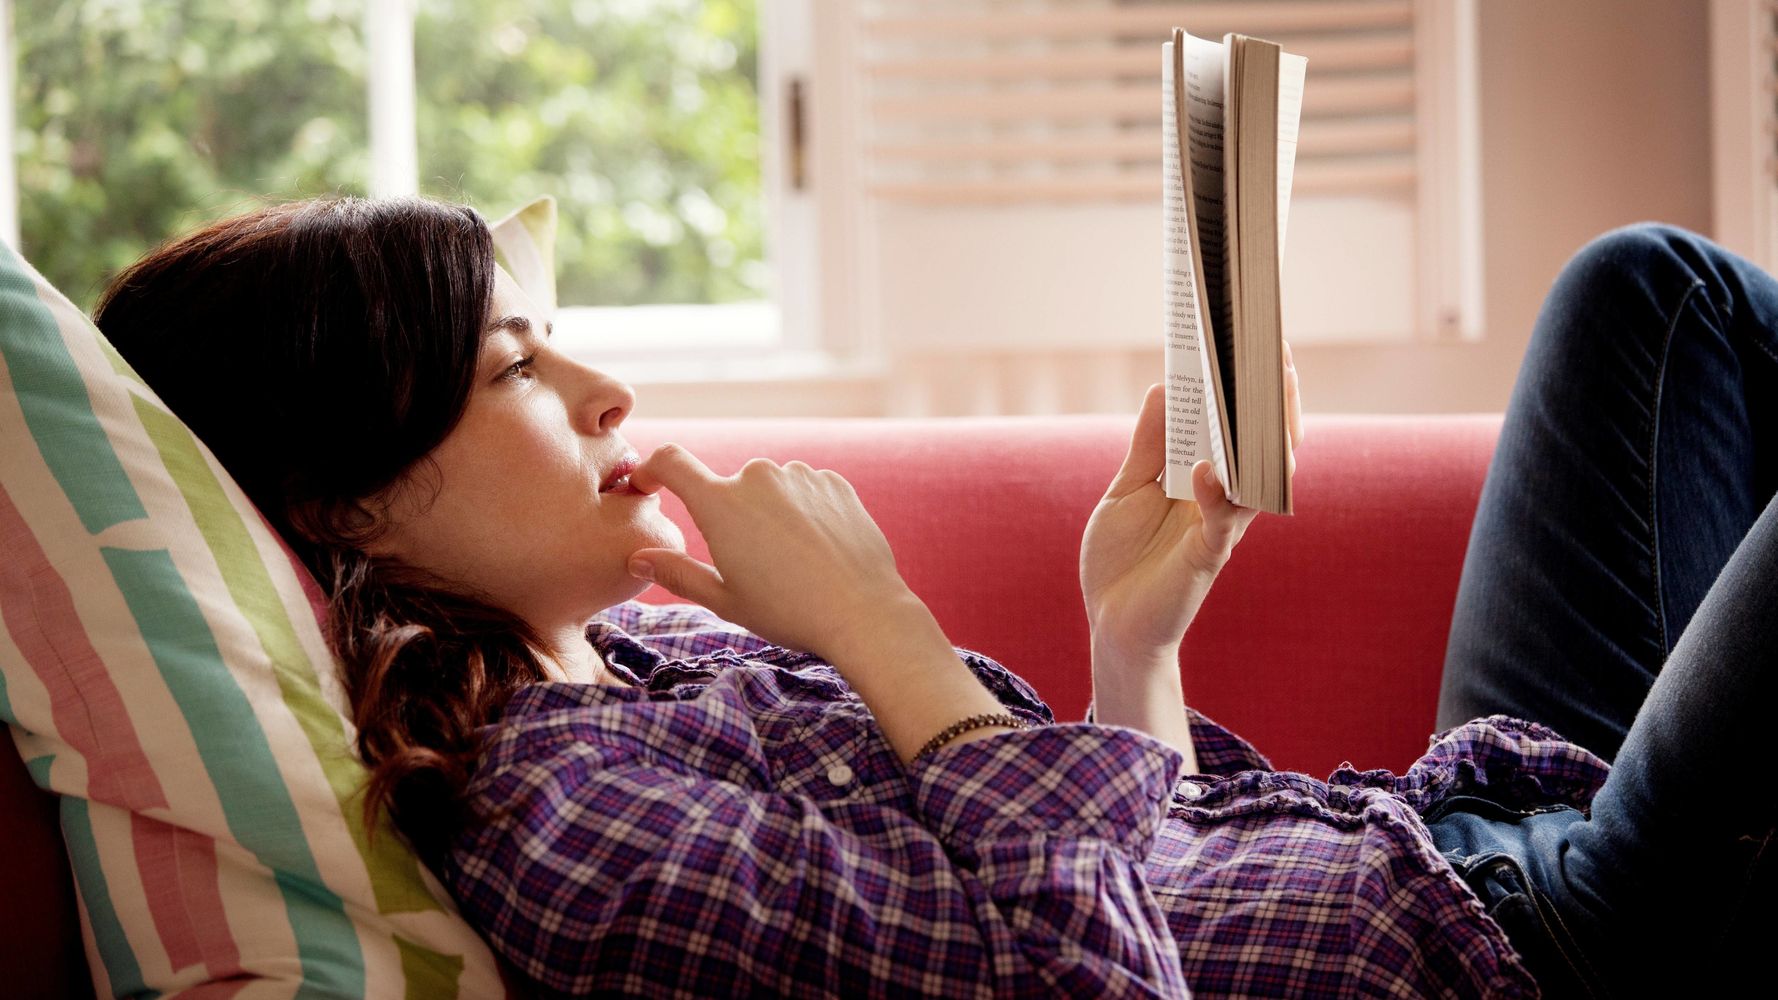 Кинули читаем. Reading Addiction. Girl reading book on Sofa in Underpants.